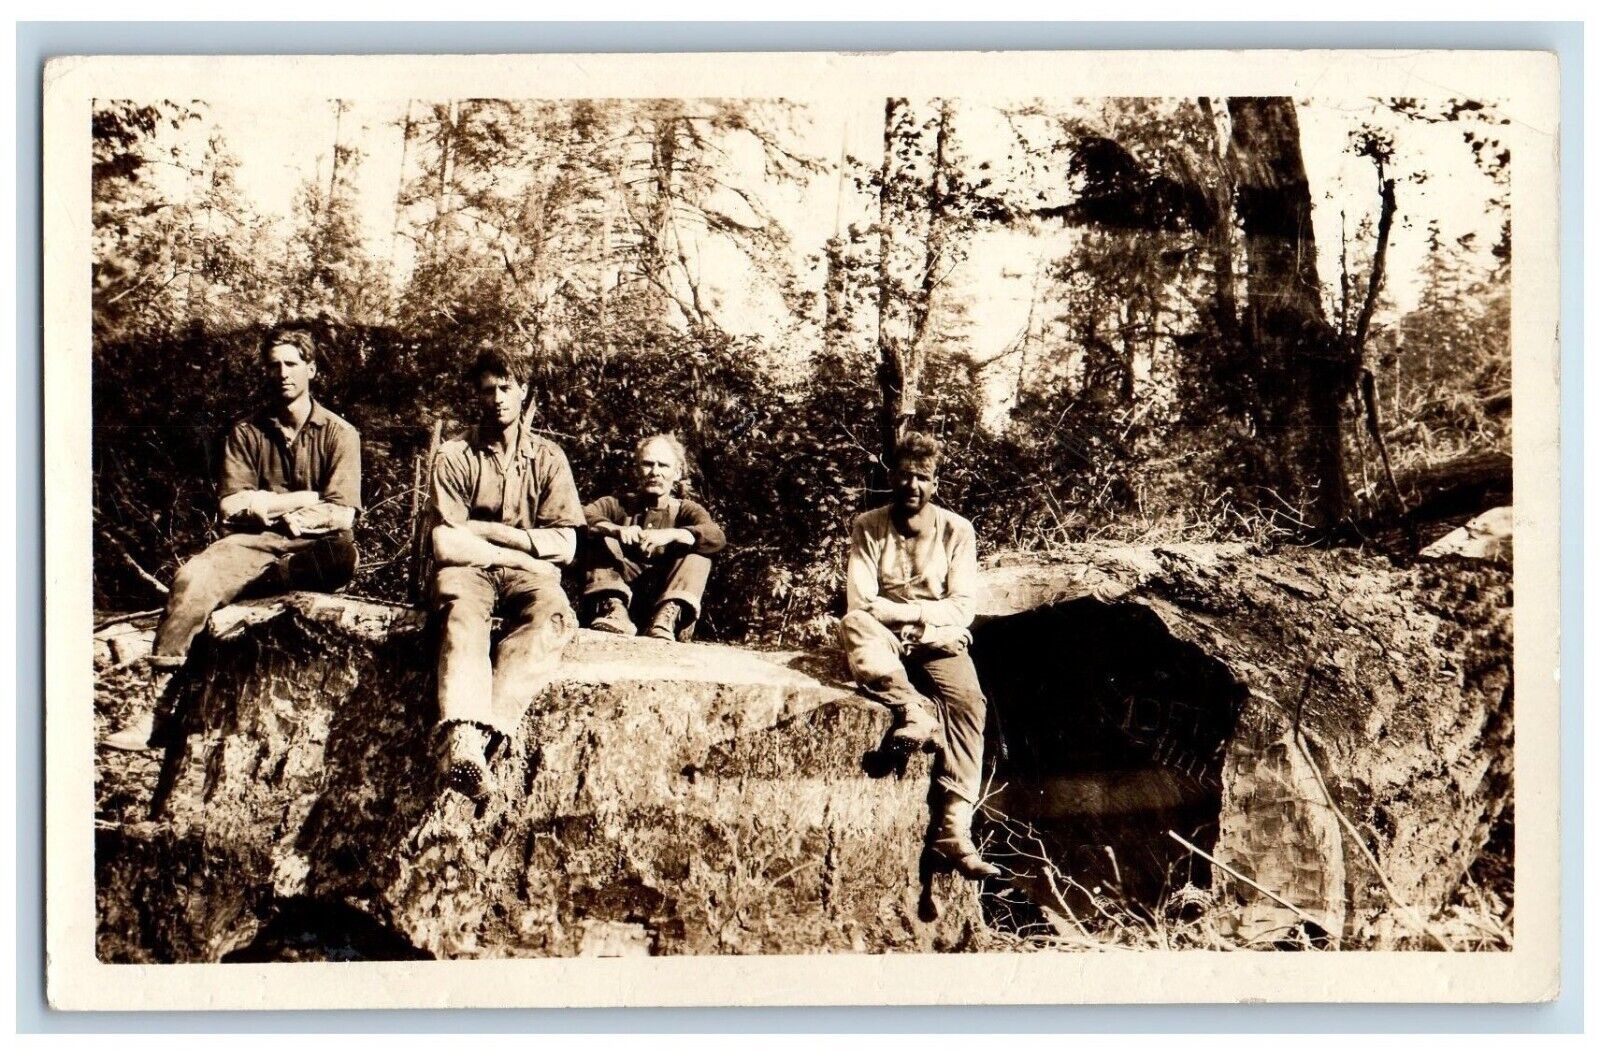 Redwood California CA Postcard RPPC Photo Logging Occupational c1910's Antique